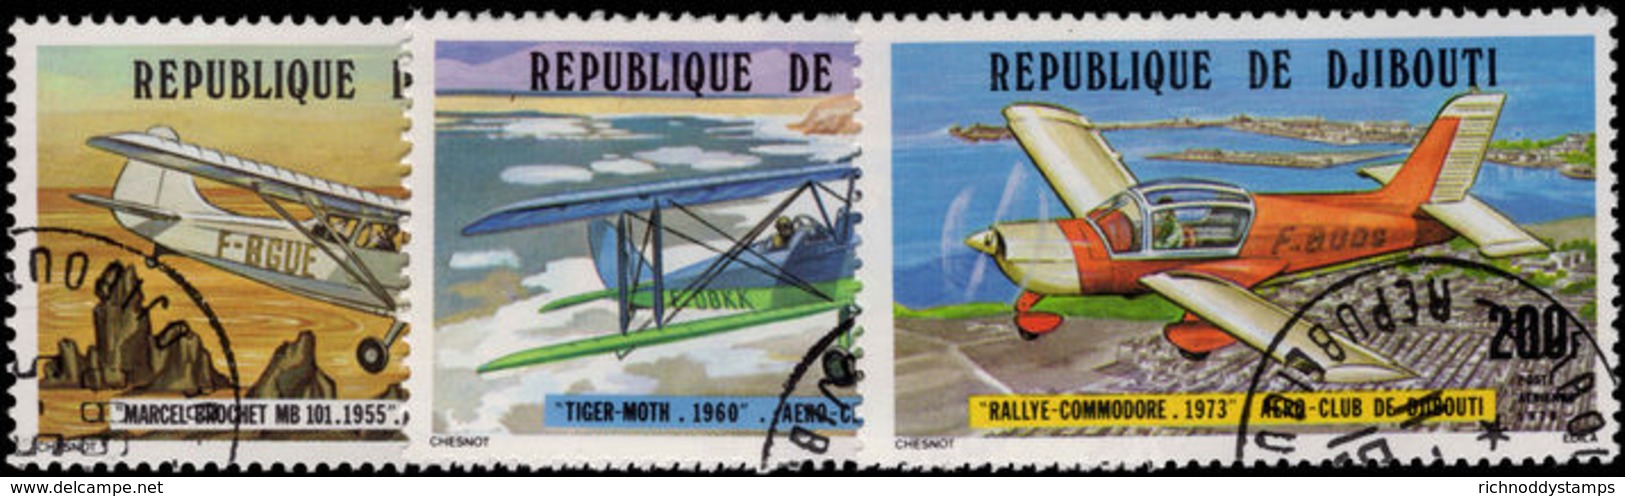 Djibouti 1978 Djibouti Aeroclub Fine Used. - Djibouti (1977-...)